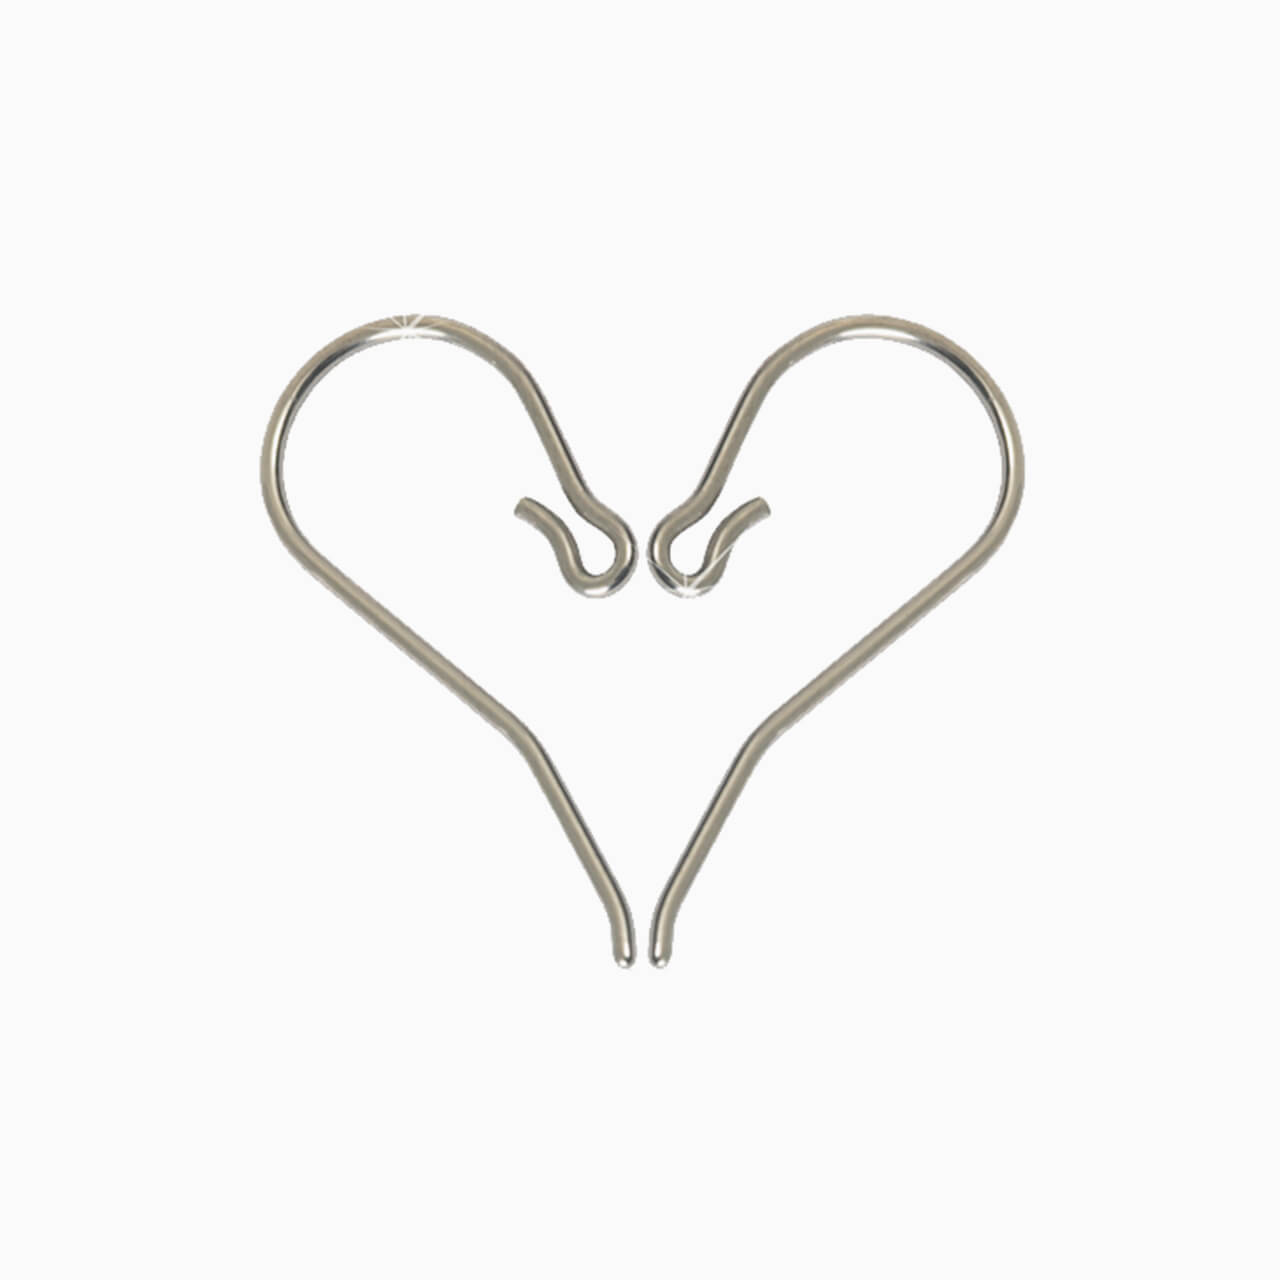 10 Silver Nickel Free Titanium French Hook Earring Findings w/ Stem & Loop  Ring